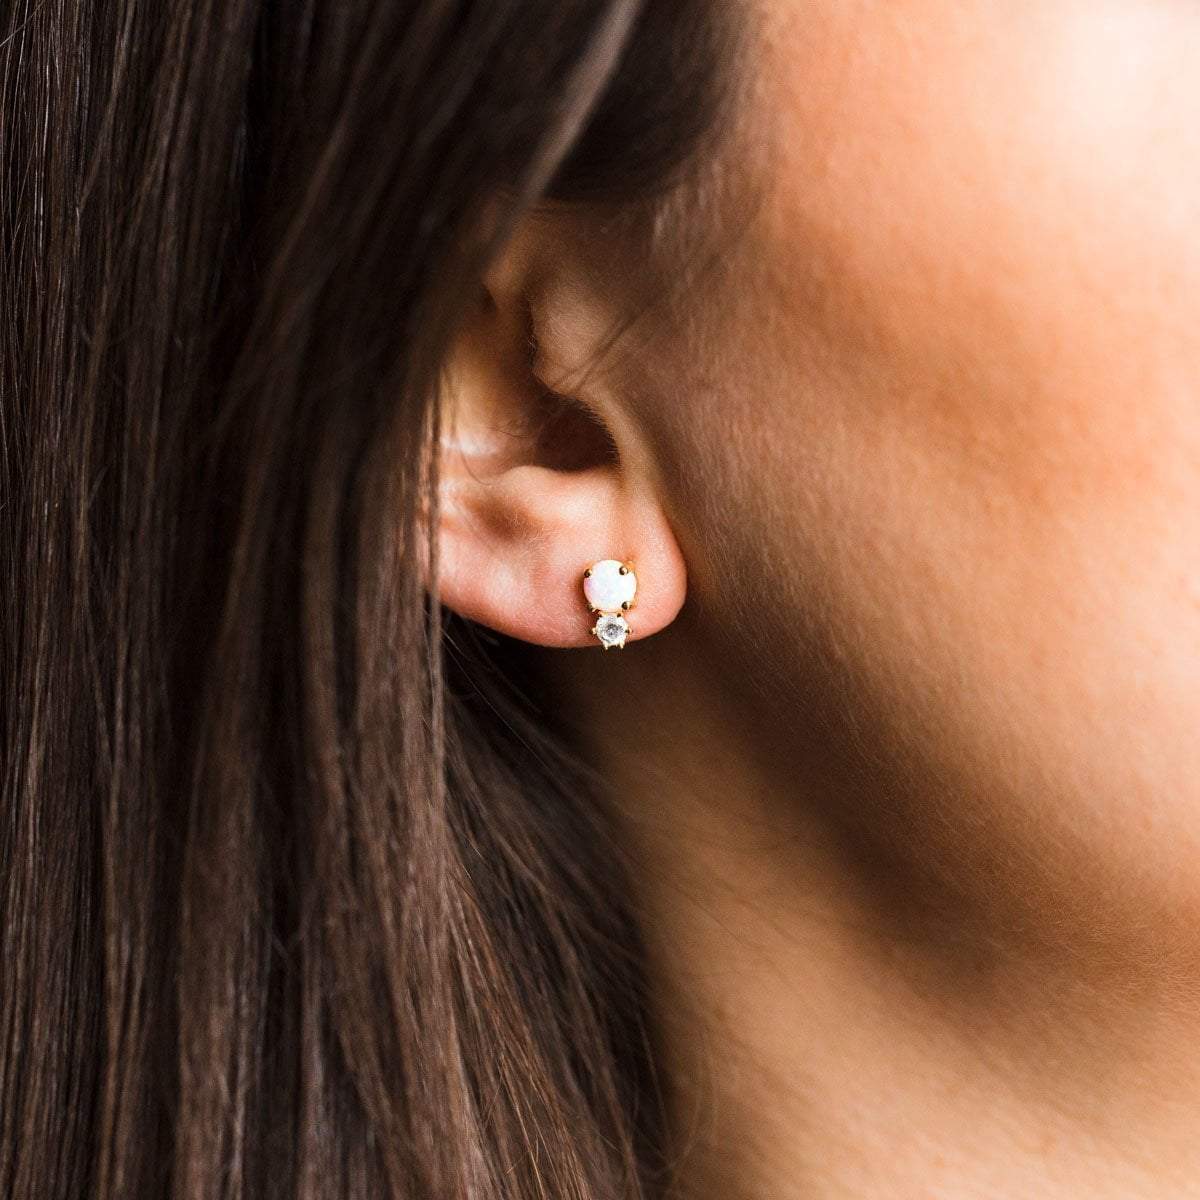 Opal & Diamond Doublet Stud Earrings earrings La Kaiser 